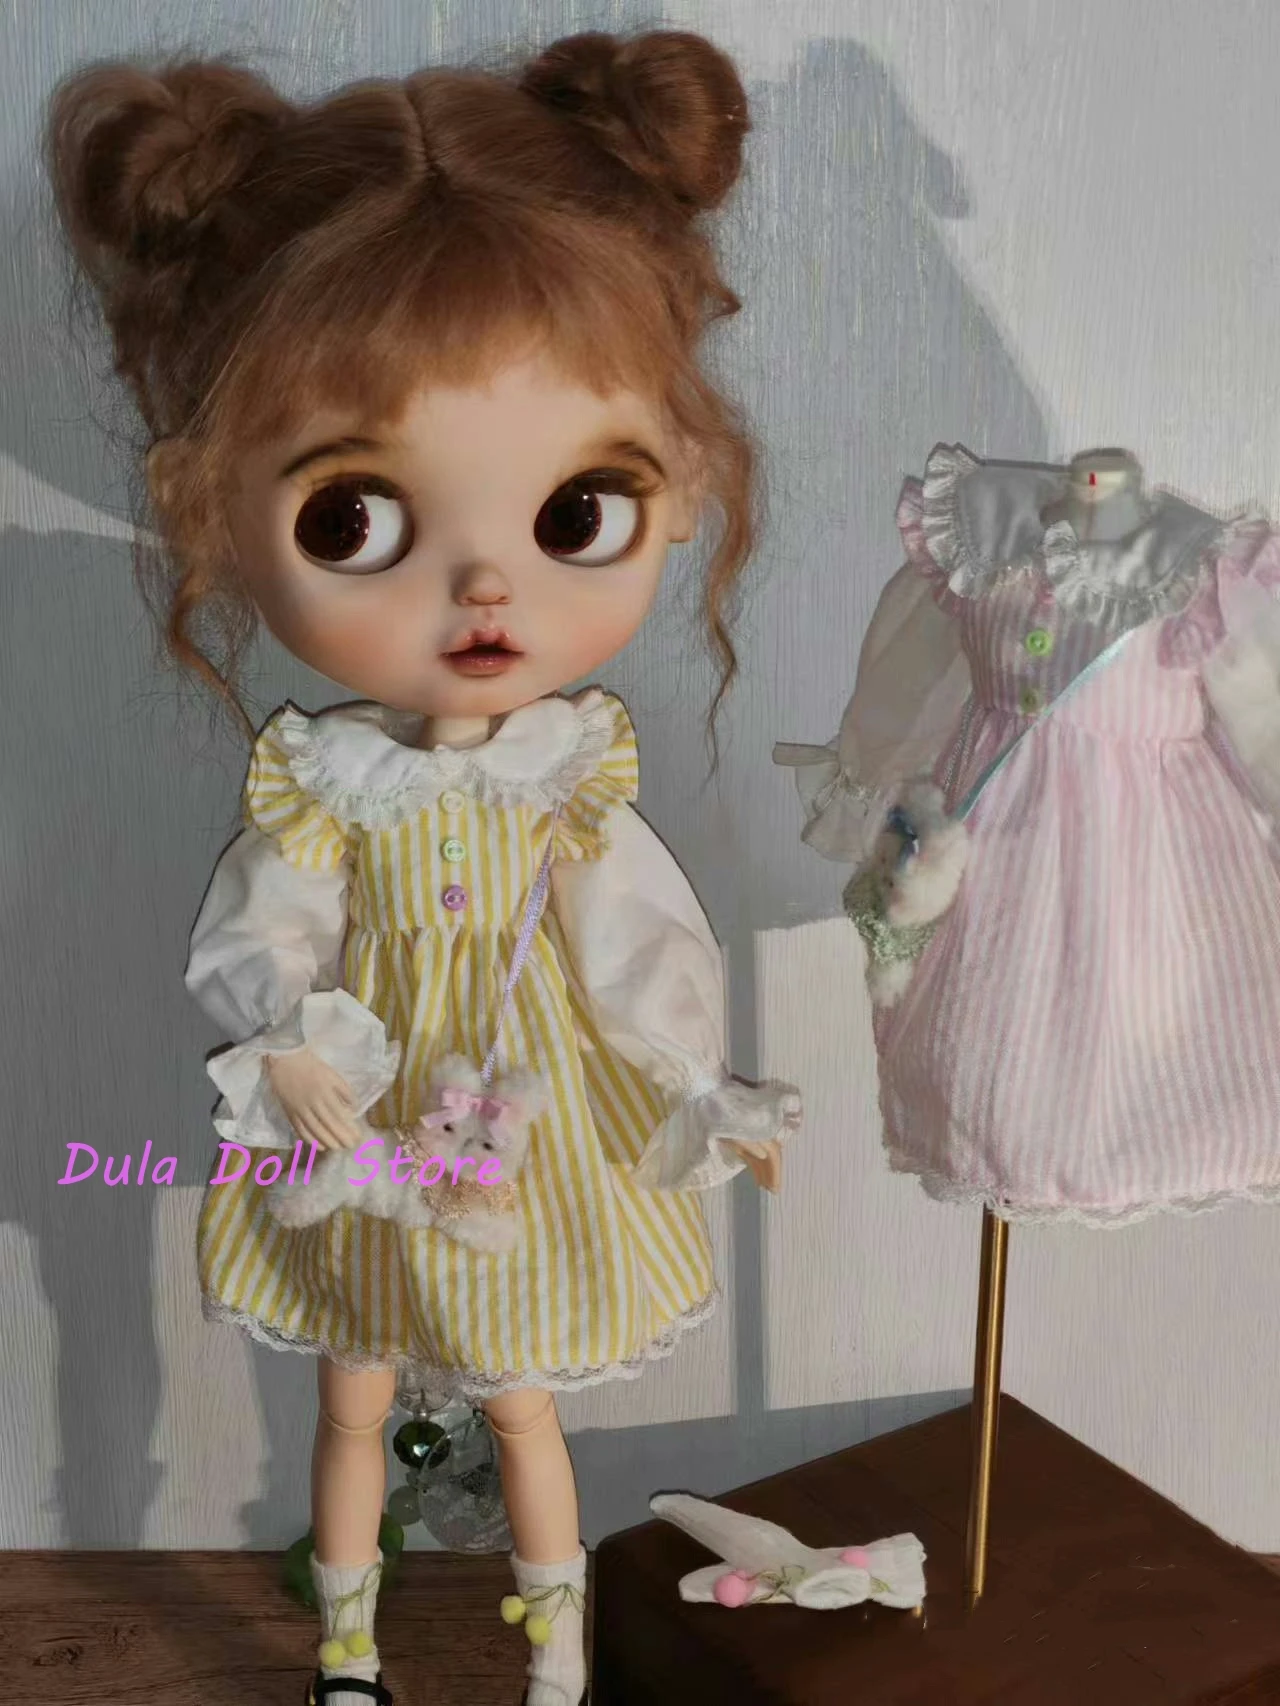 Одежда для куклы Dula Платье кружевная юбка в вертикальную полоску Blythe Qbaby ob24 ob22 Azone Licca ICY JerryB 1/6 Аксессуары для кукол Bjd